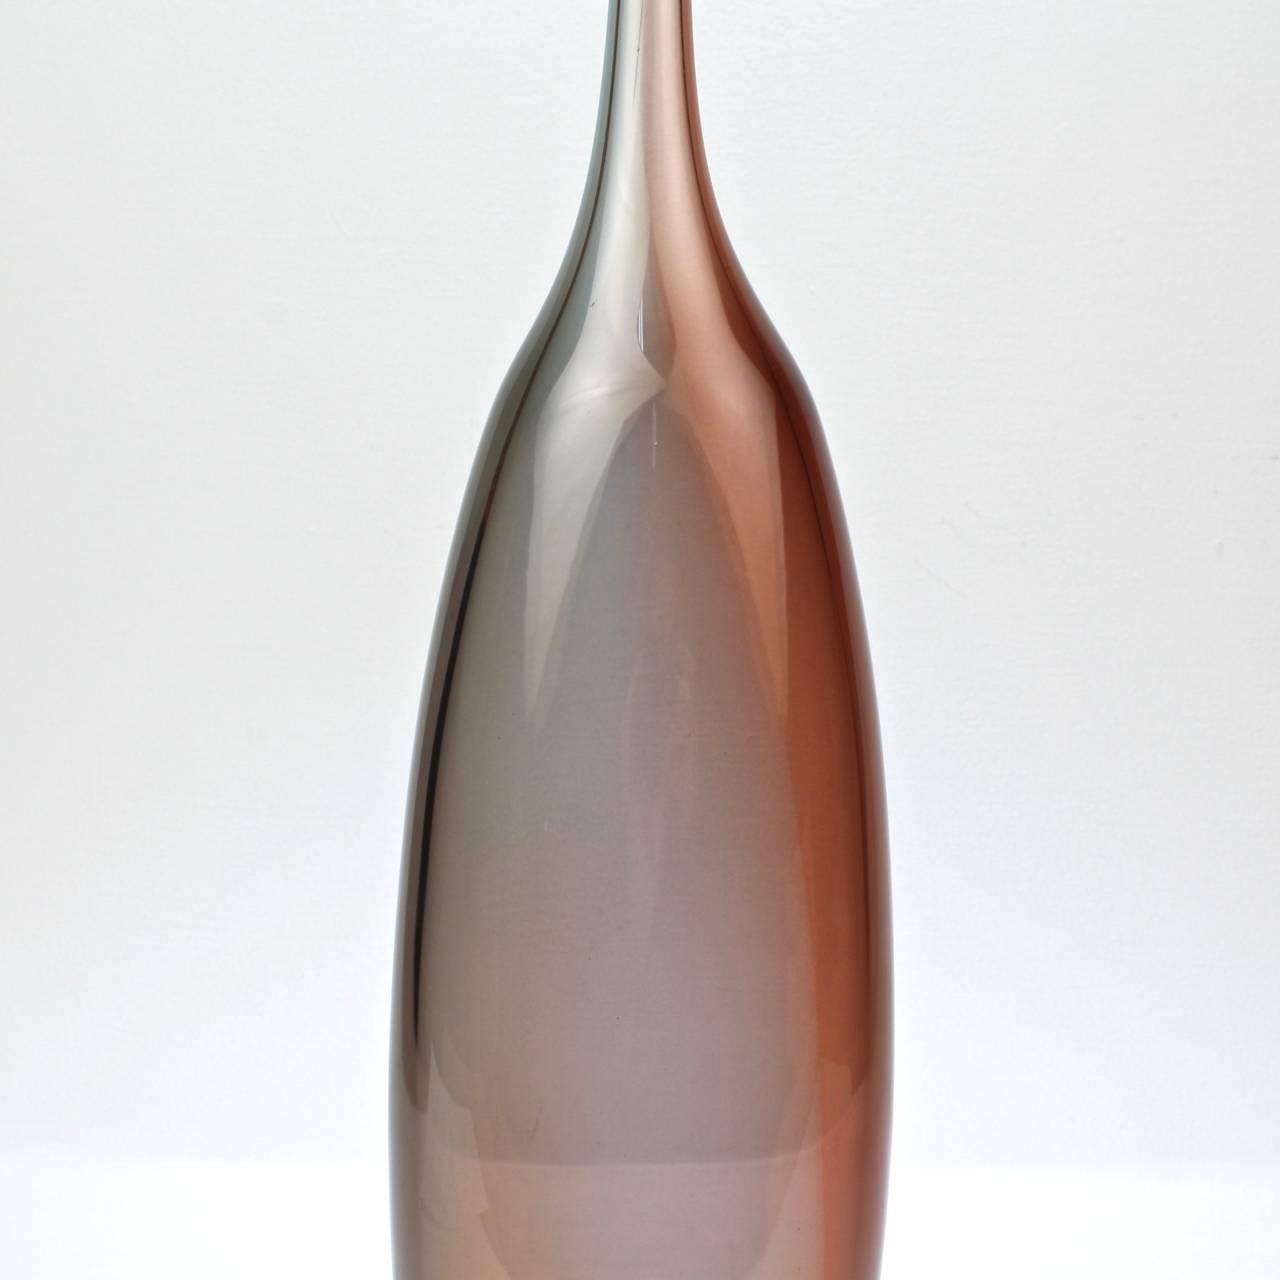 Swedish Tobago Series Glass Vase by Kjell Engmann for Kosta Boda, 21st Century